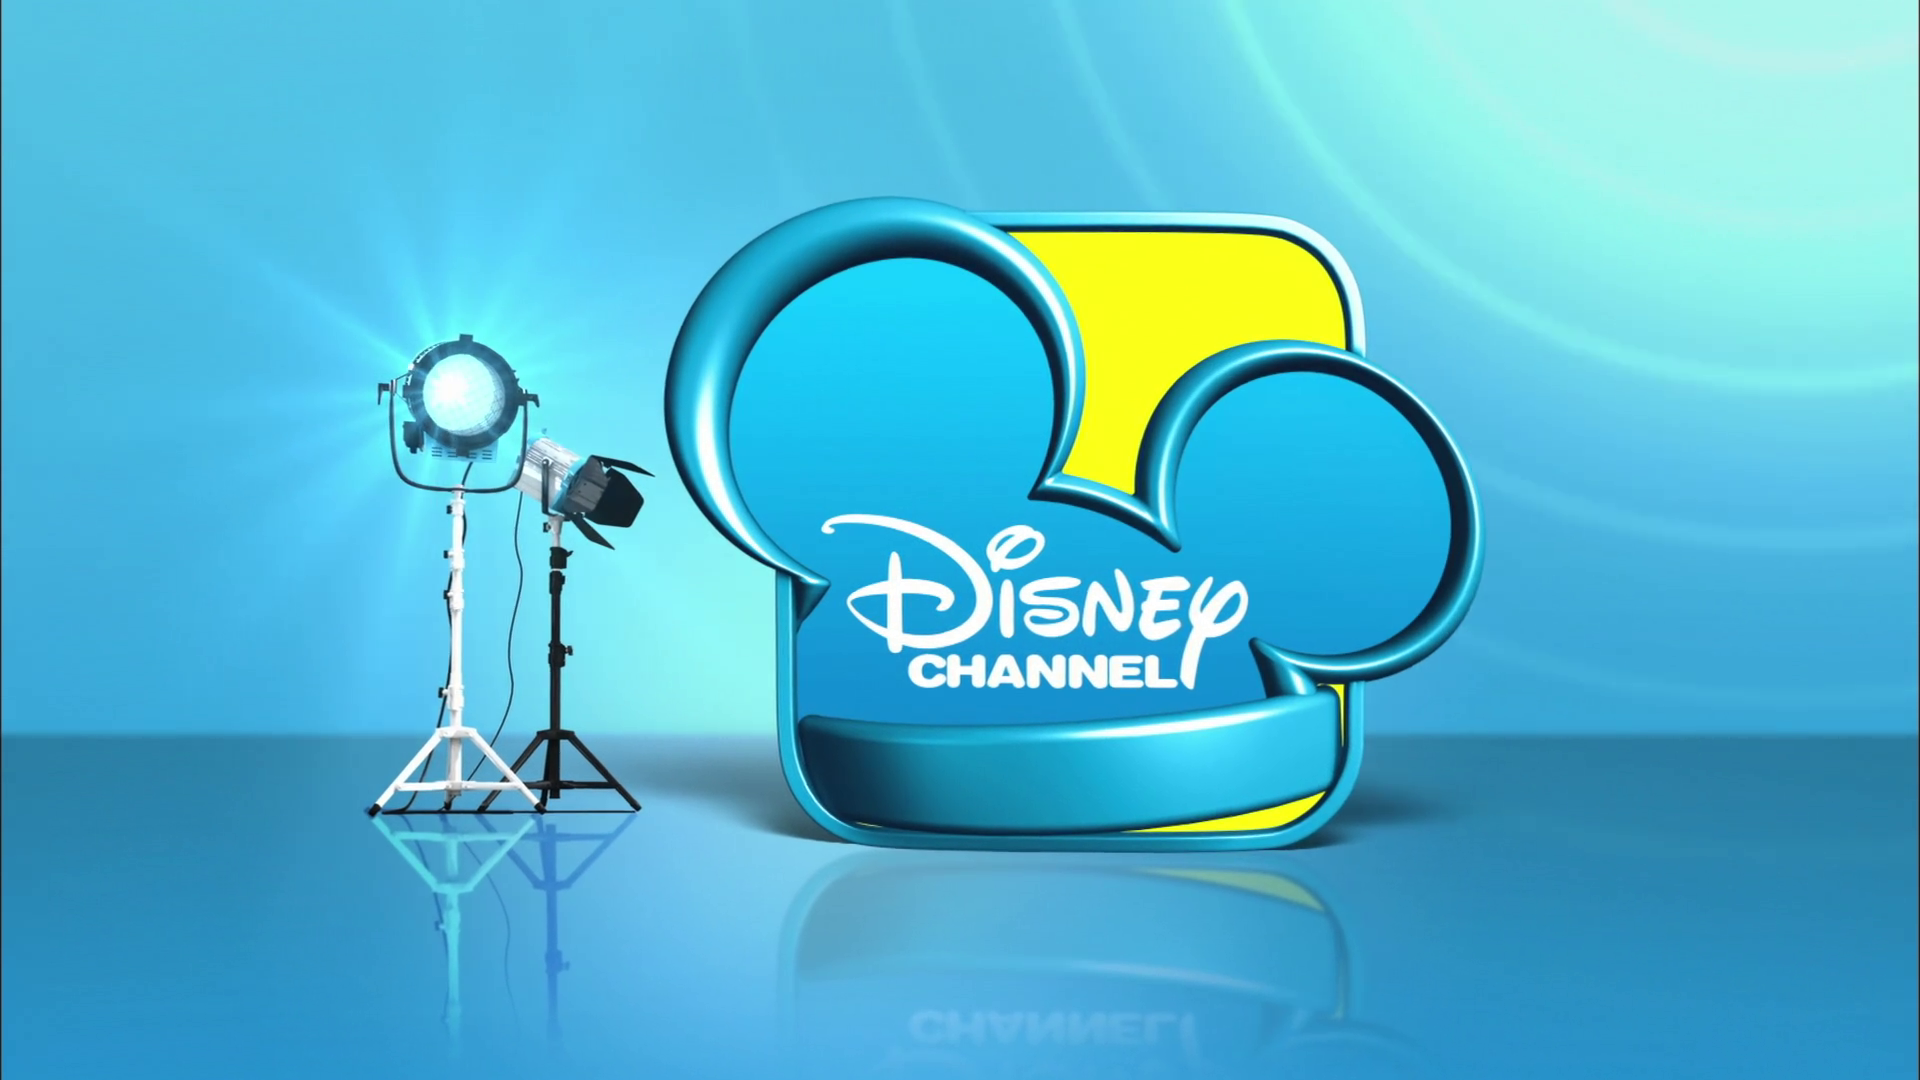 Disney Channel Wallpaper - Disney Channel For Wave - HD Wallpaper 